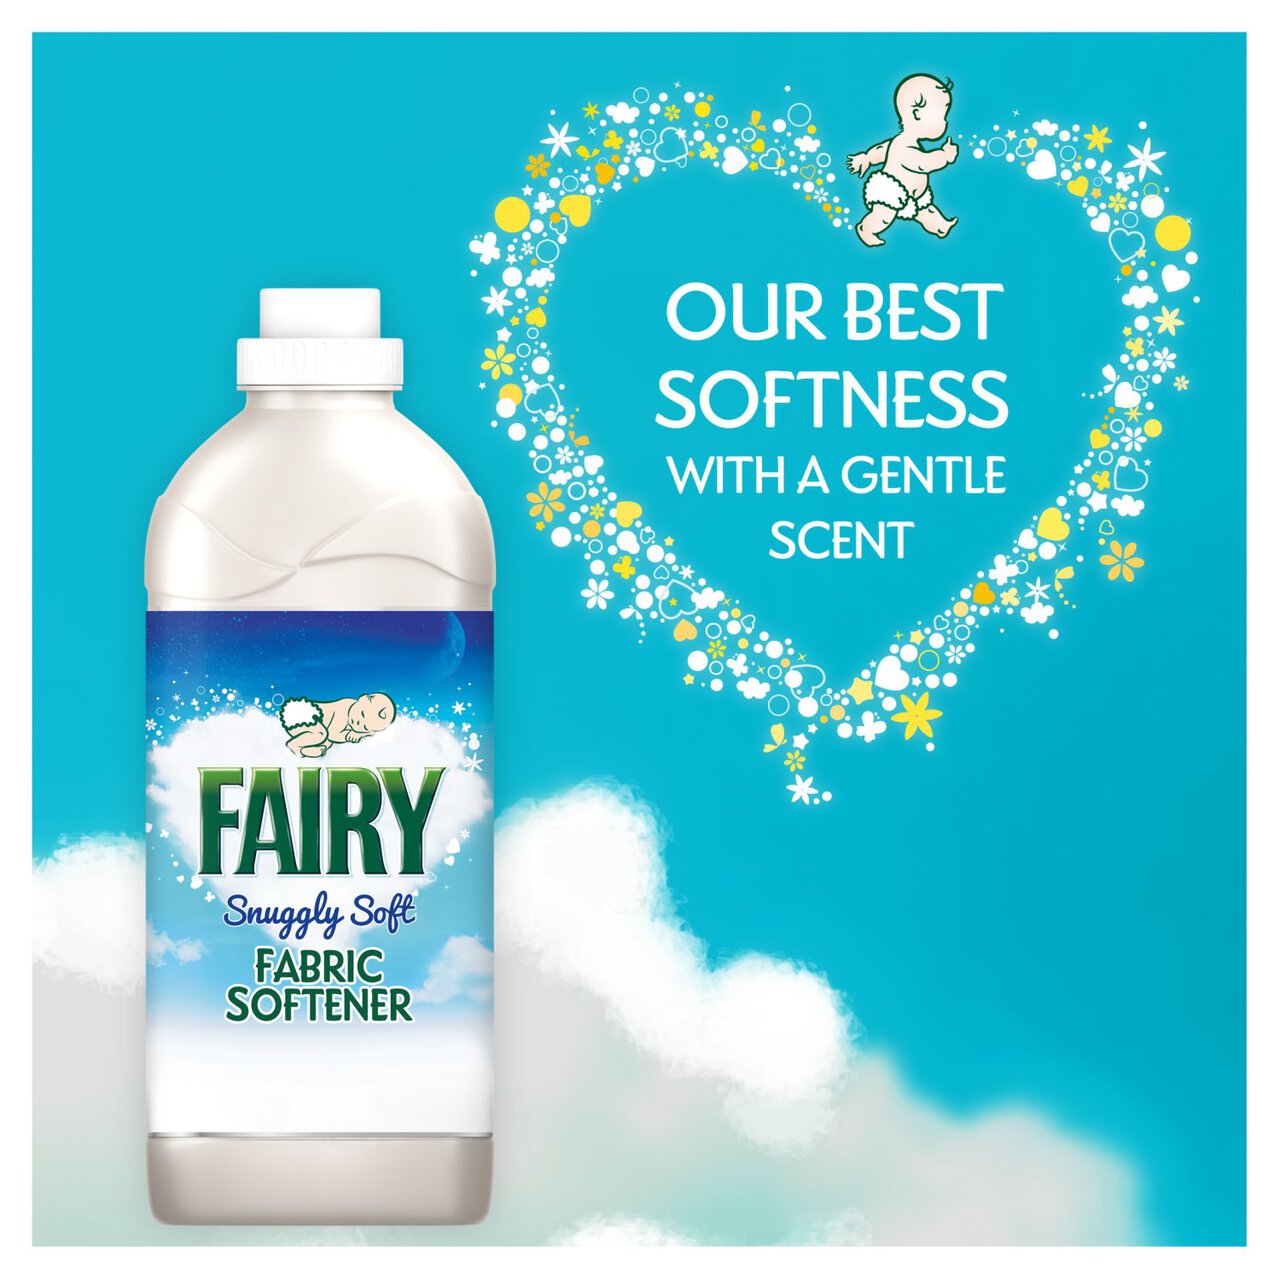 Fairy Fabric Conditioner for Sensitive Skin 54 Washes by Fairy Non Bio 1.82l